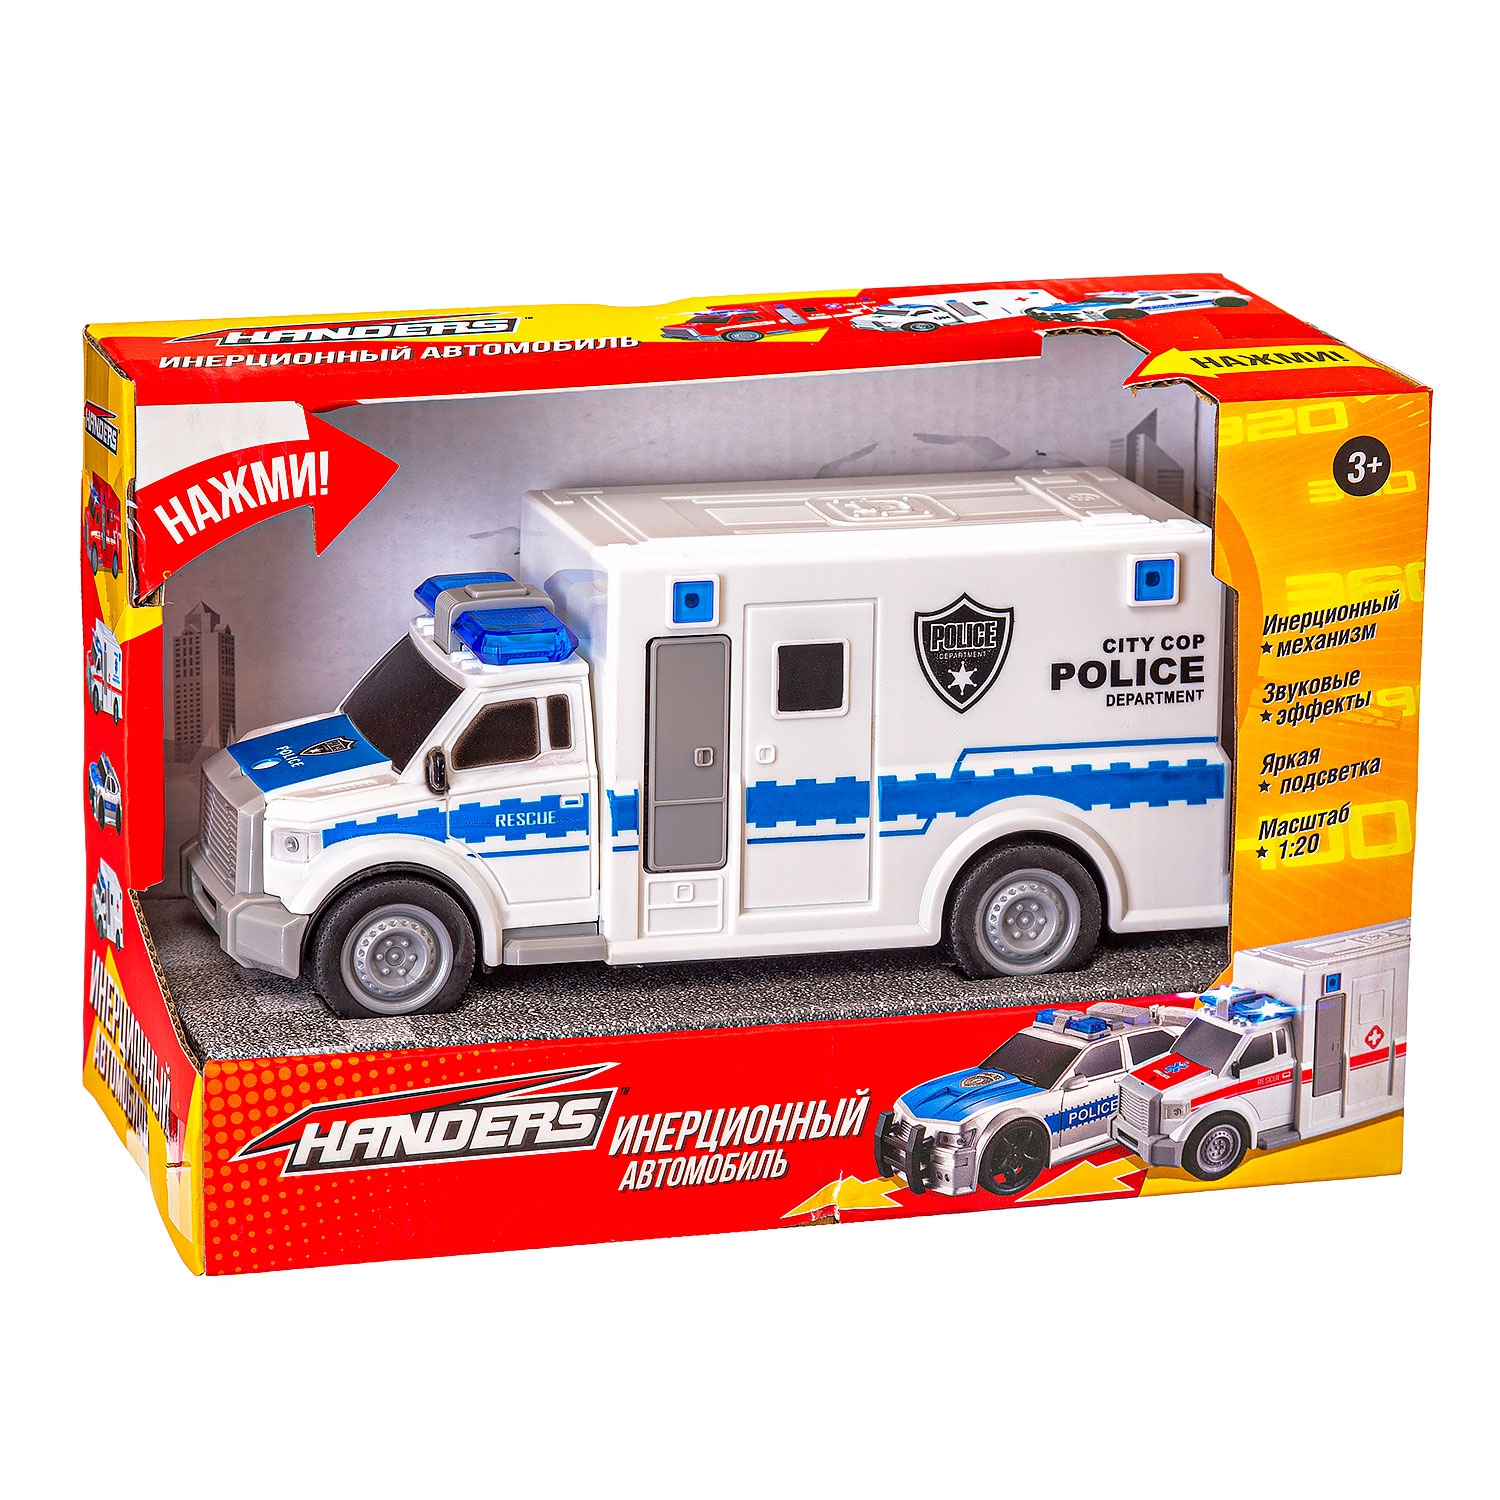 Инерционная игрушка Handers Полицейский фургон (19 см, 1:20, свет, звук) (Вид 1)